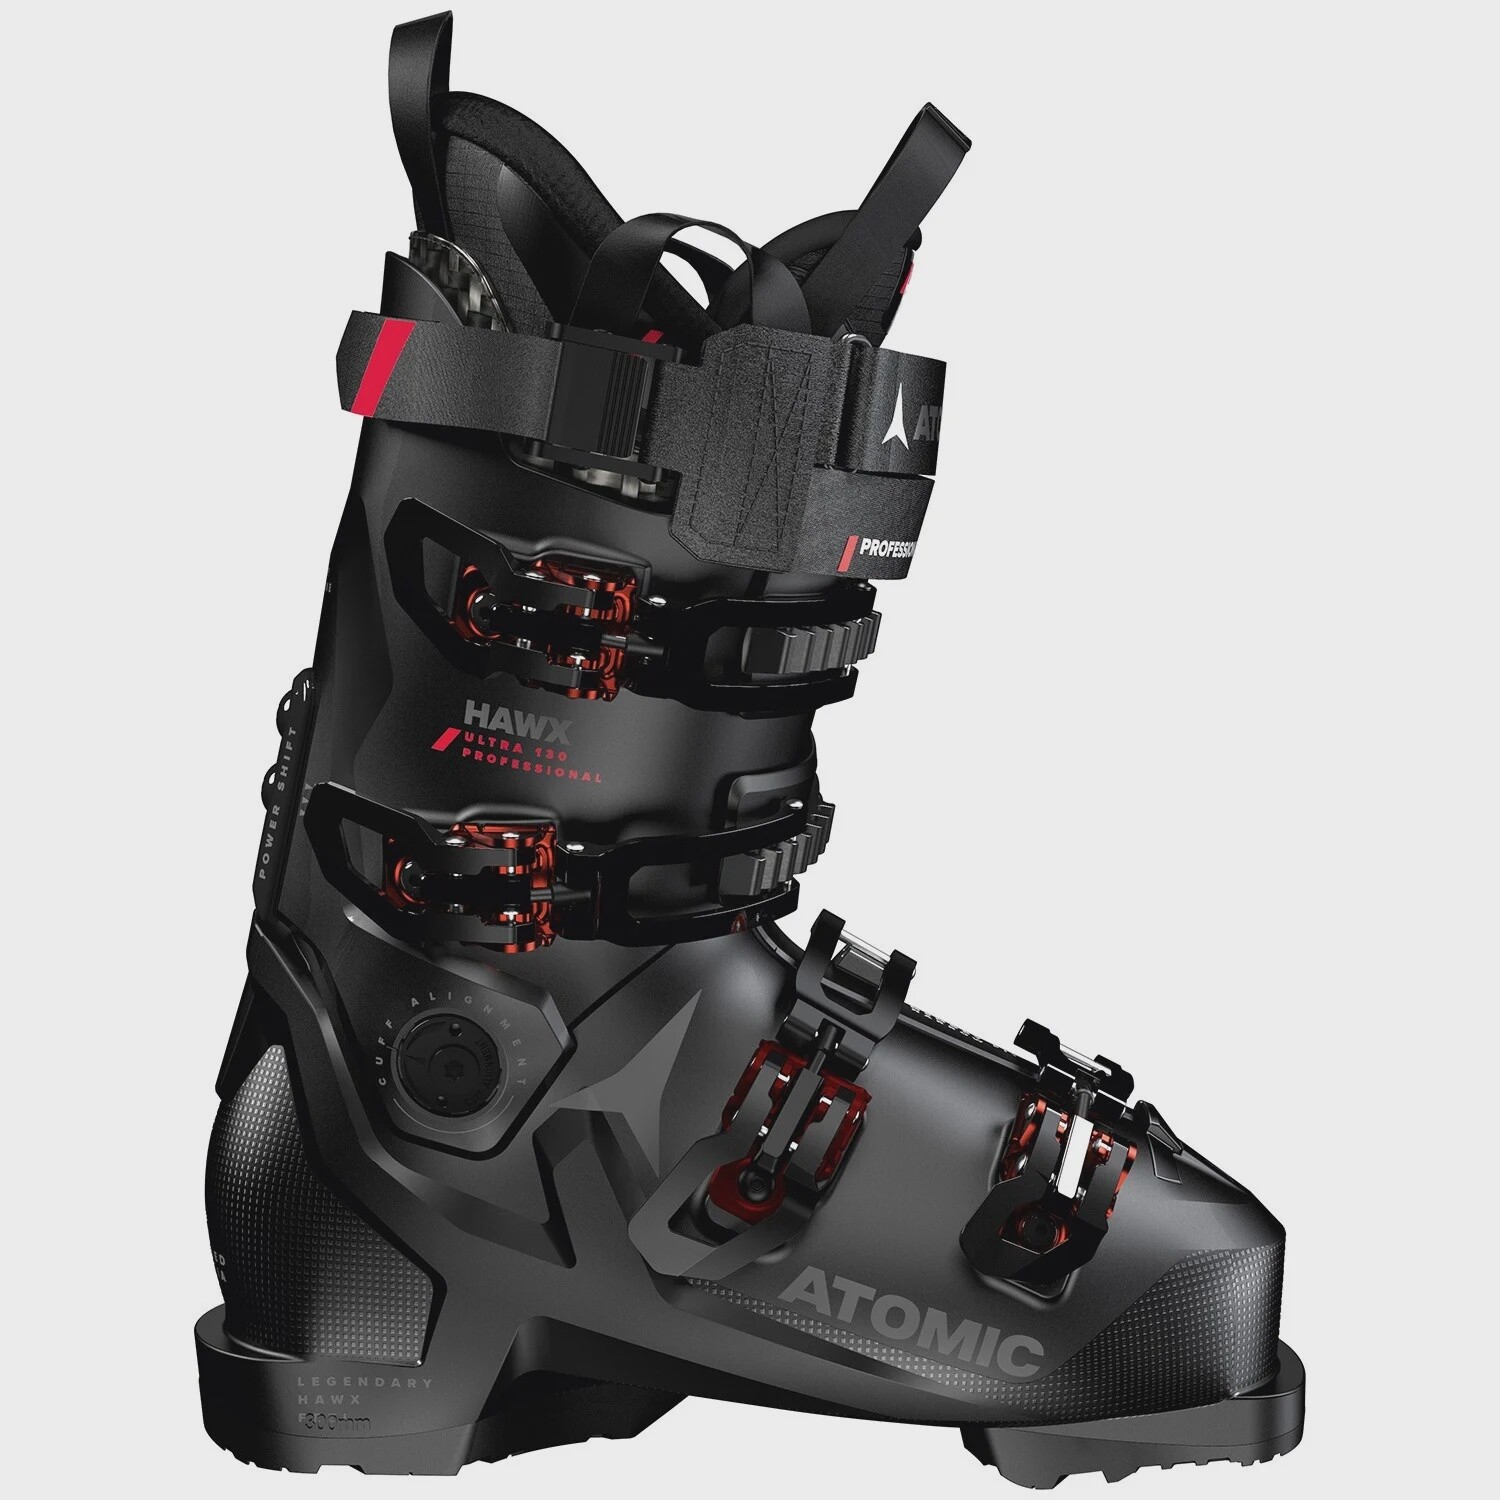 Atomic Hawx Ultra 130 Professional Ski Boots